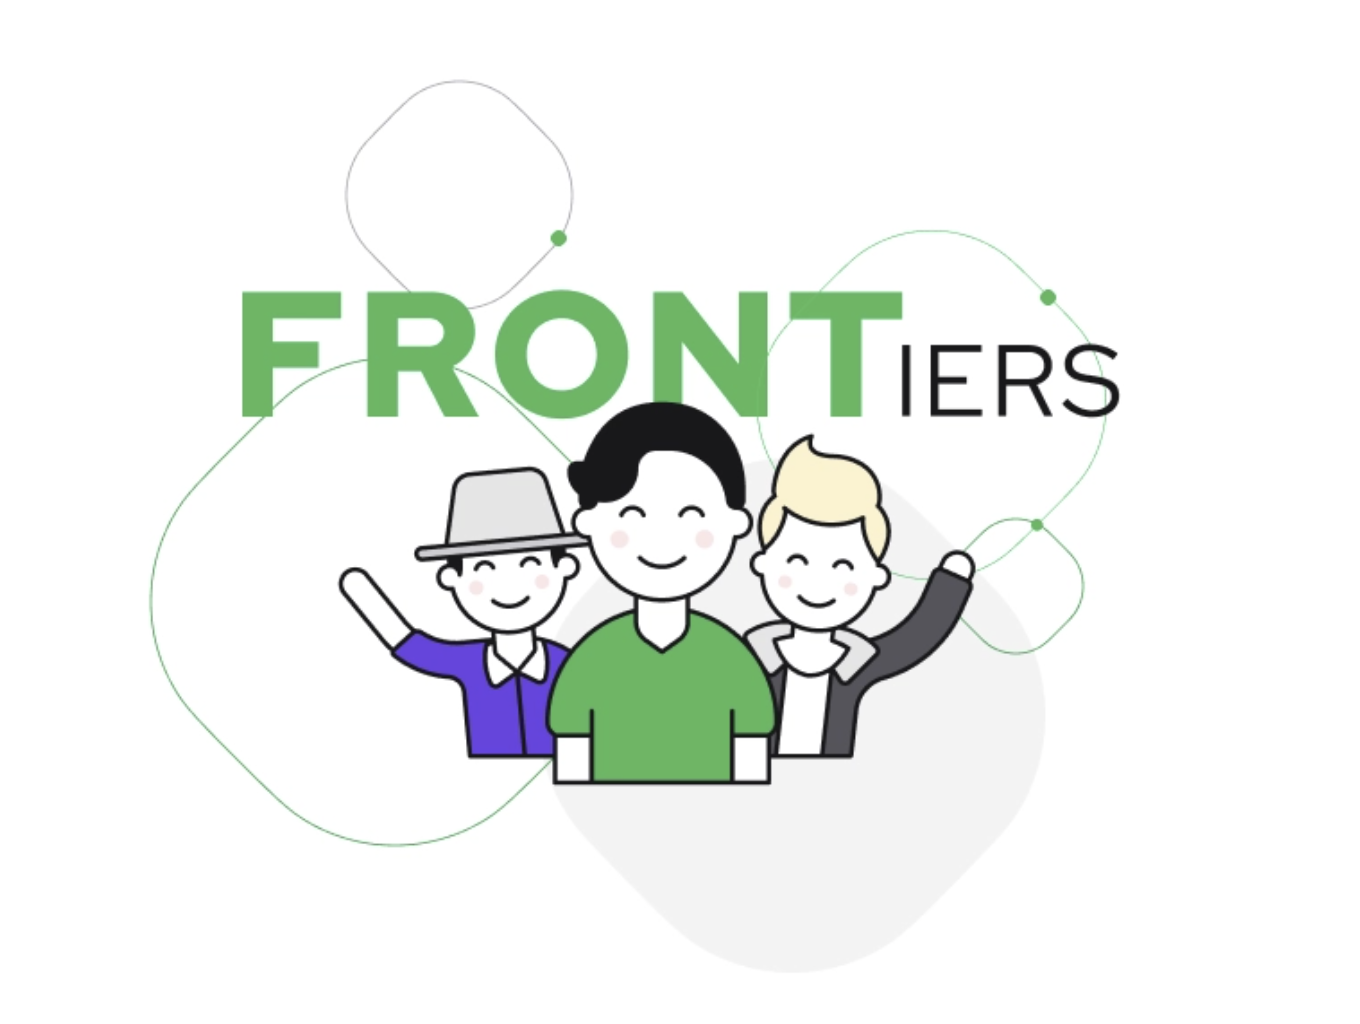 Image de l'initiative "FRONTiers" de Vue Storefront qui montre des dessins animés de différents types de personnes ensemble.